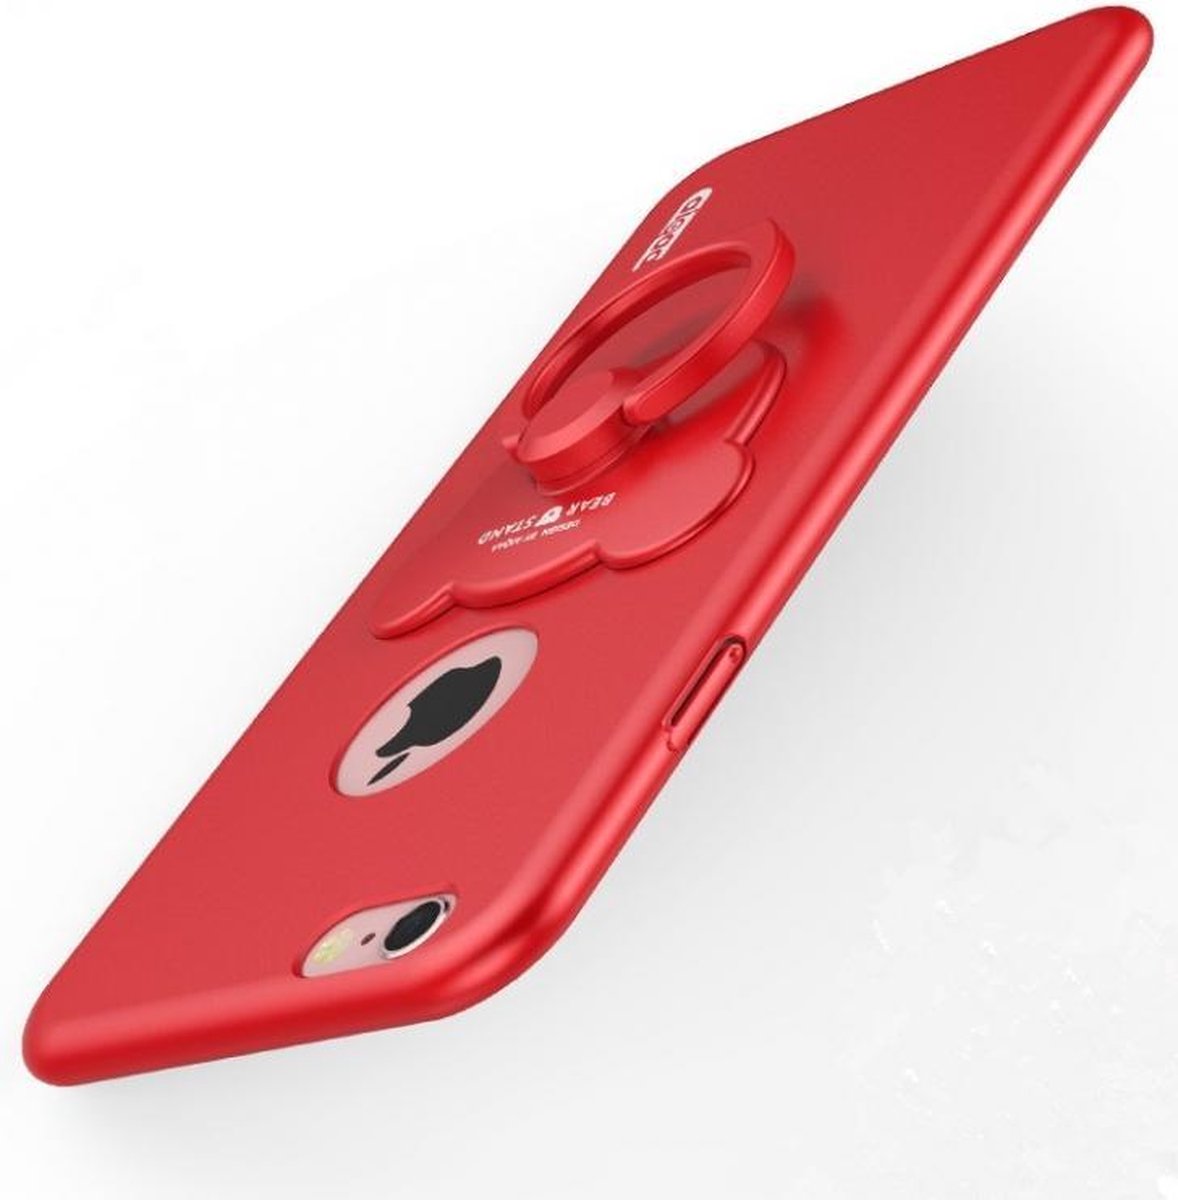 Rode Hardcase Hoesje met Ring voor iPhone 6/6S